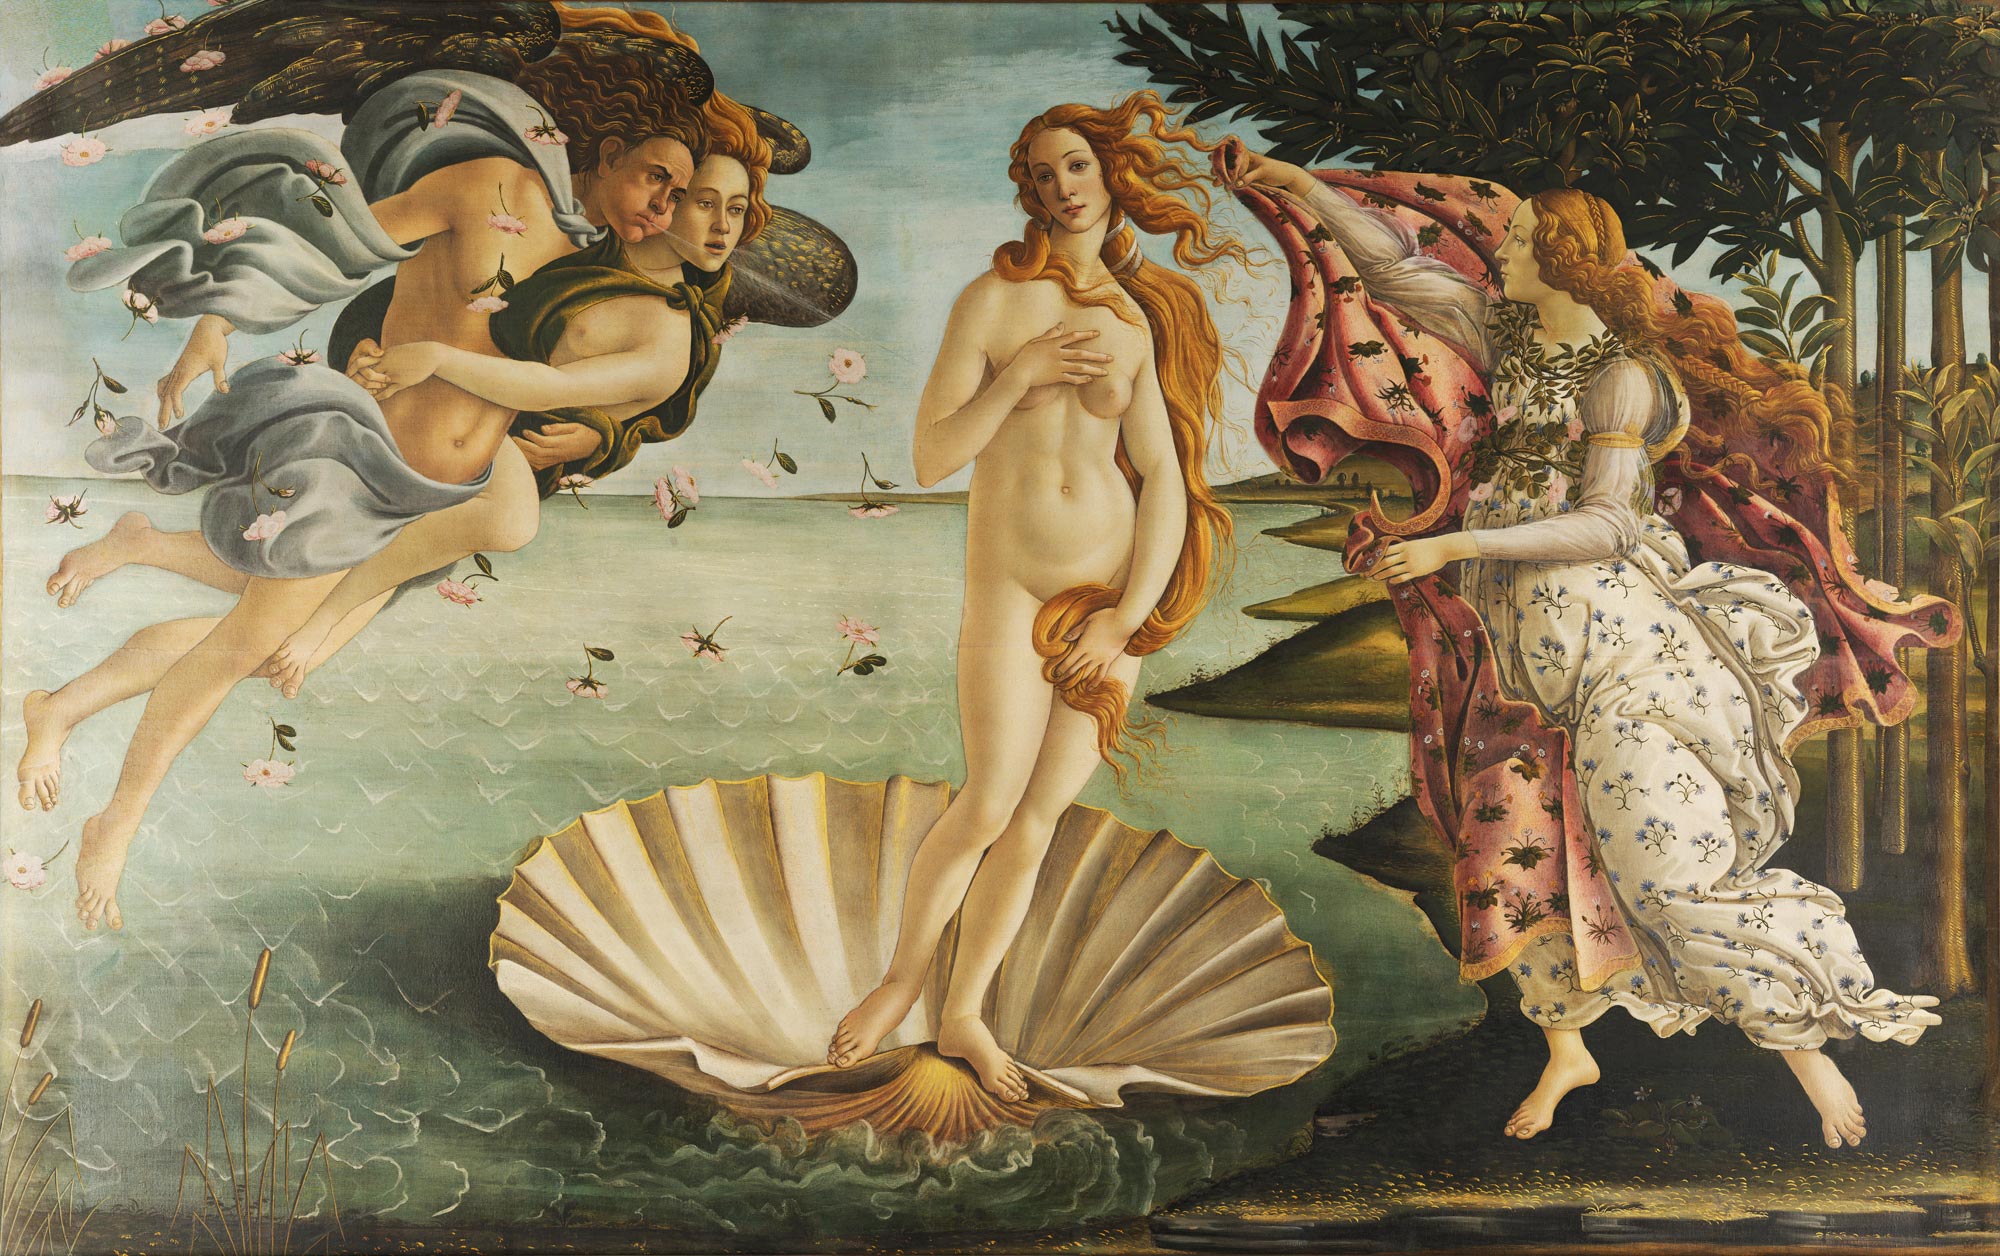 Sandro Botticelli, Birth of Venus (c. 1485; tempera on canvas, 172.5 x 278.5 cm; Florence, Uffizi Galleries, inv. 1890 no. 878)